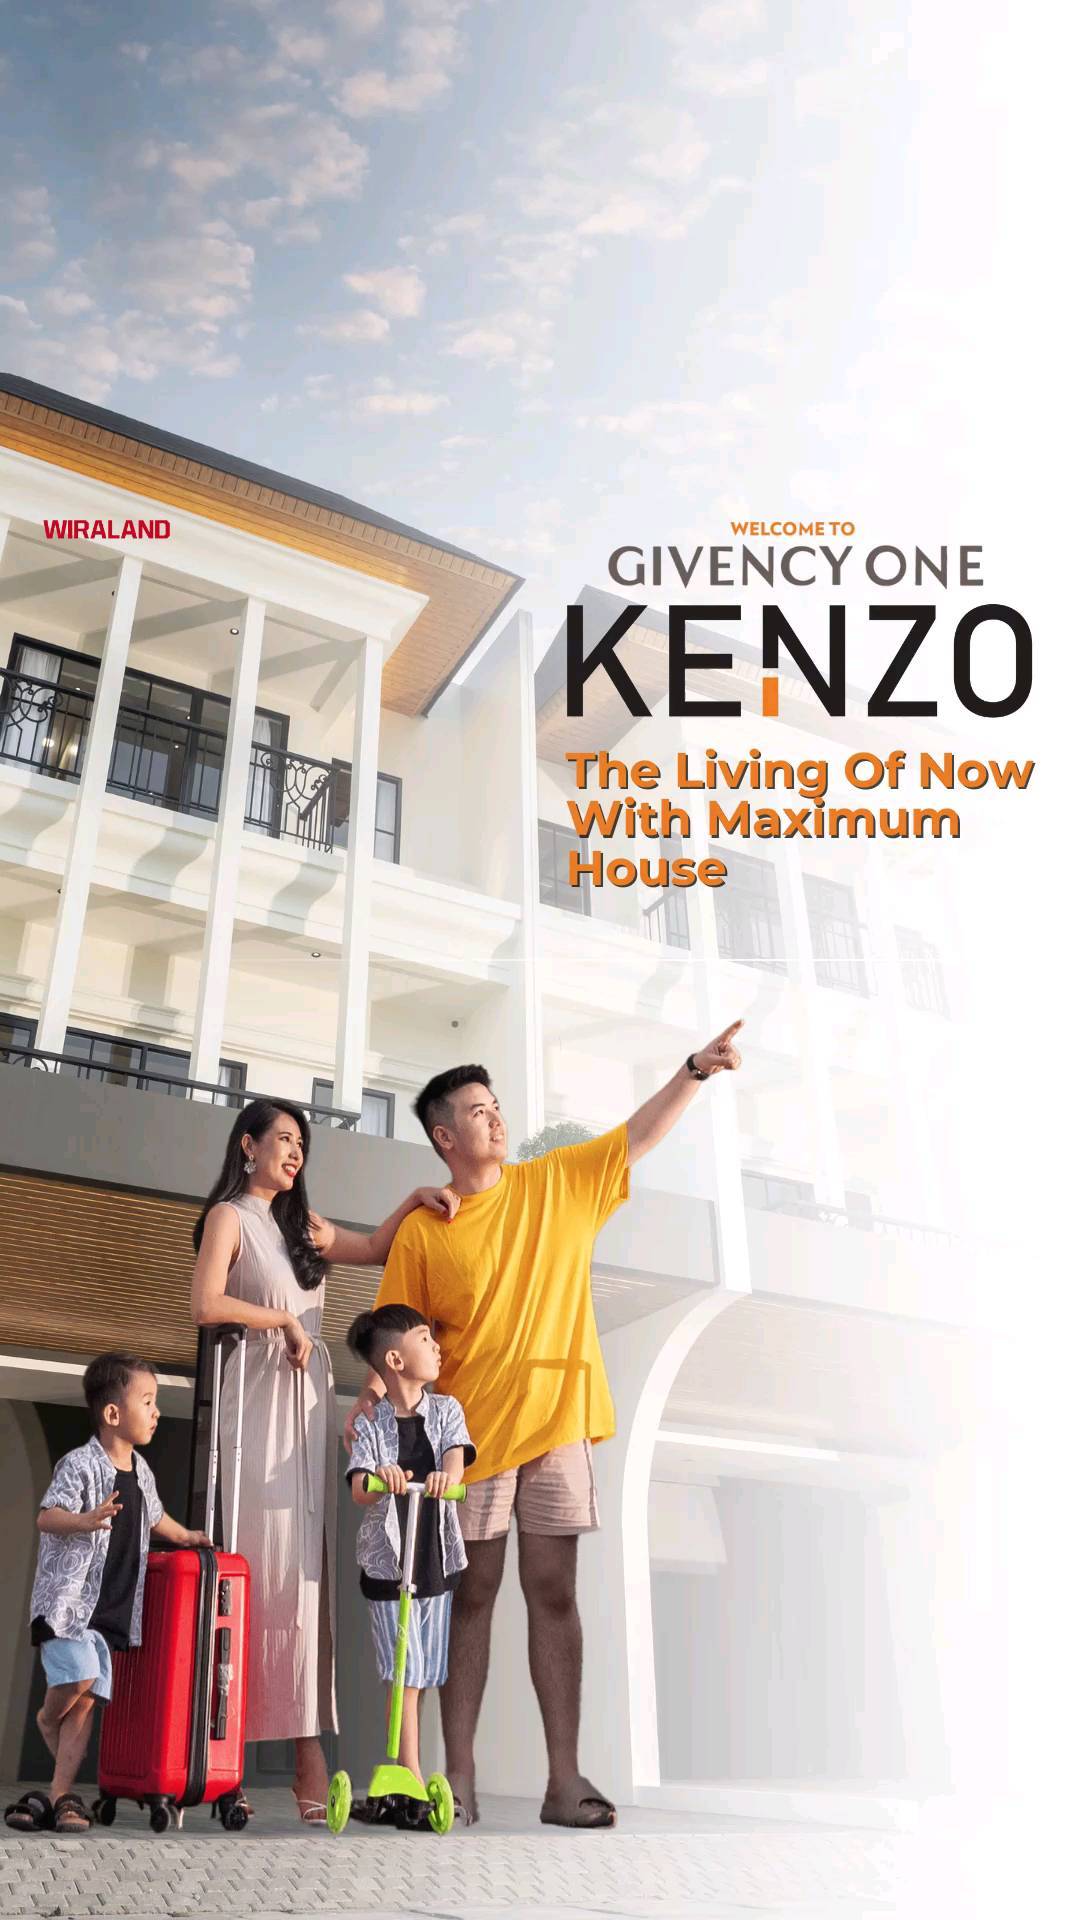 GIVENCY ONE,  KENZO “THE LIVING OF NOW WITH MAXIMUM HOUSE” RUMAH DESAIN KHUSUS UNTUK WORK FROM/AT HOME

Mengusung desain modern classic dari arsitek ternama, KENZO "The living of now with maximum house" dirancang khusus untuk mendukung kegiatan work from/at home.

Terletak di perumahan mewah Givency One, dengan lokasi yang strategis dan fasilitas eksklusif seperti Danau, Gazebo, Clubhouse, Kolam Renang, Lapangan Basket dan Keamanan 24 Jam, hunian yang tentu saja membuat bangga penghuninya. GIVENCY ONE "COME HOME WITH PRIDE"

Kunjungi rumah contoh KENZO sekarang!

@Givency.one @wiralandproperty

 : Jl. Gaperta Ujung, Medan
 : 0853 7300 8800
🌐 : GivencyOne.com

#Wiraland​ #RumahMilenial​ #RumahMinimalis​ #ModernMinimalis​ #ModernArchitecture​ #RumahDPMurah​ #RumahKeren​  #RumahMedan​ #PropertiMedan​ #PropertiIndonesia​ #PropertyIndonesia​